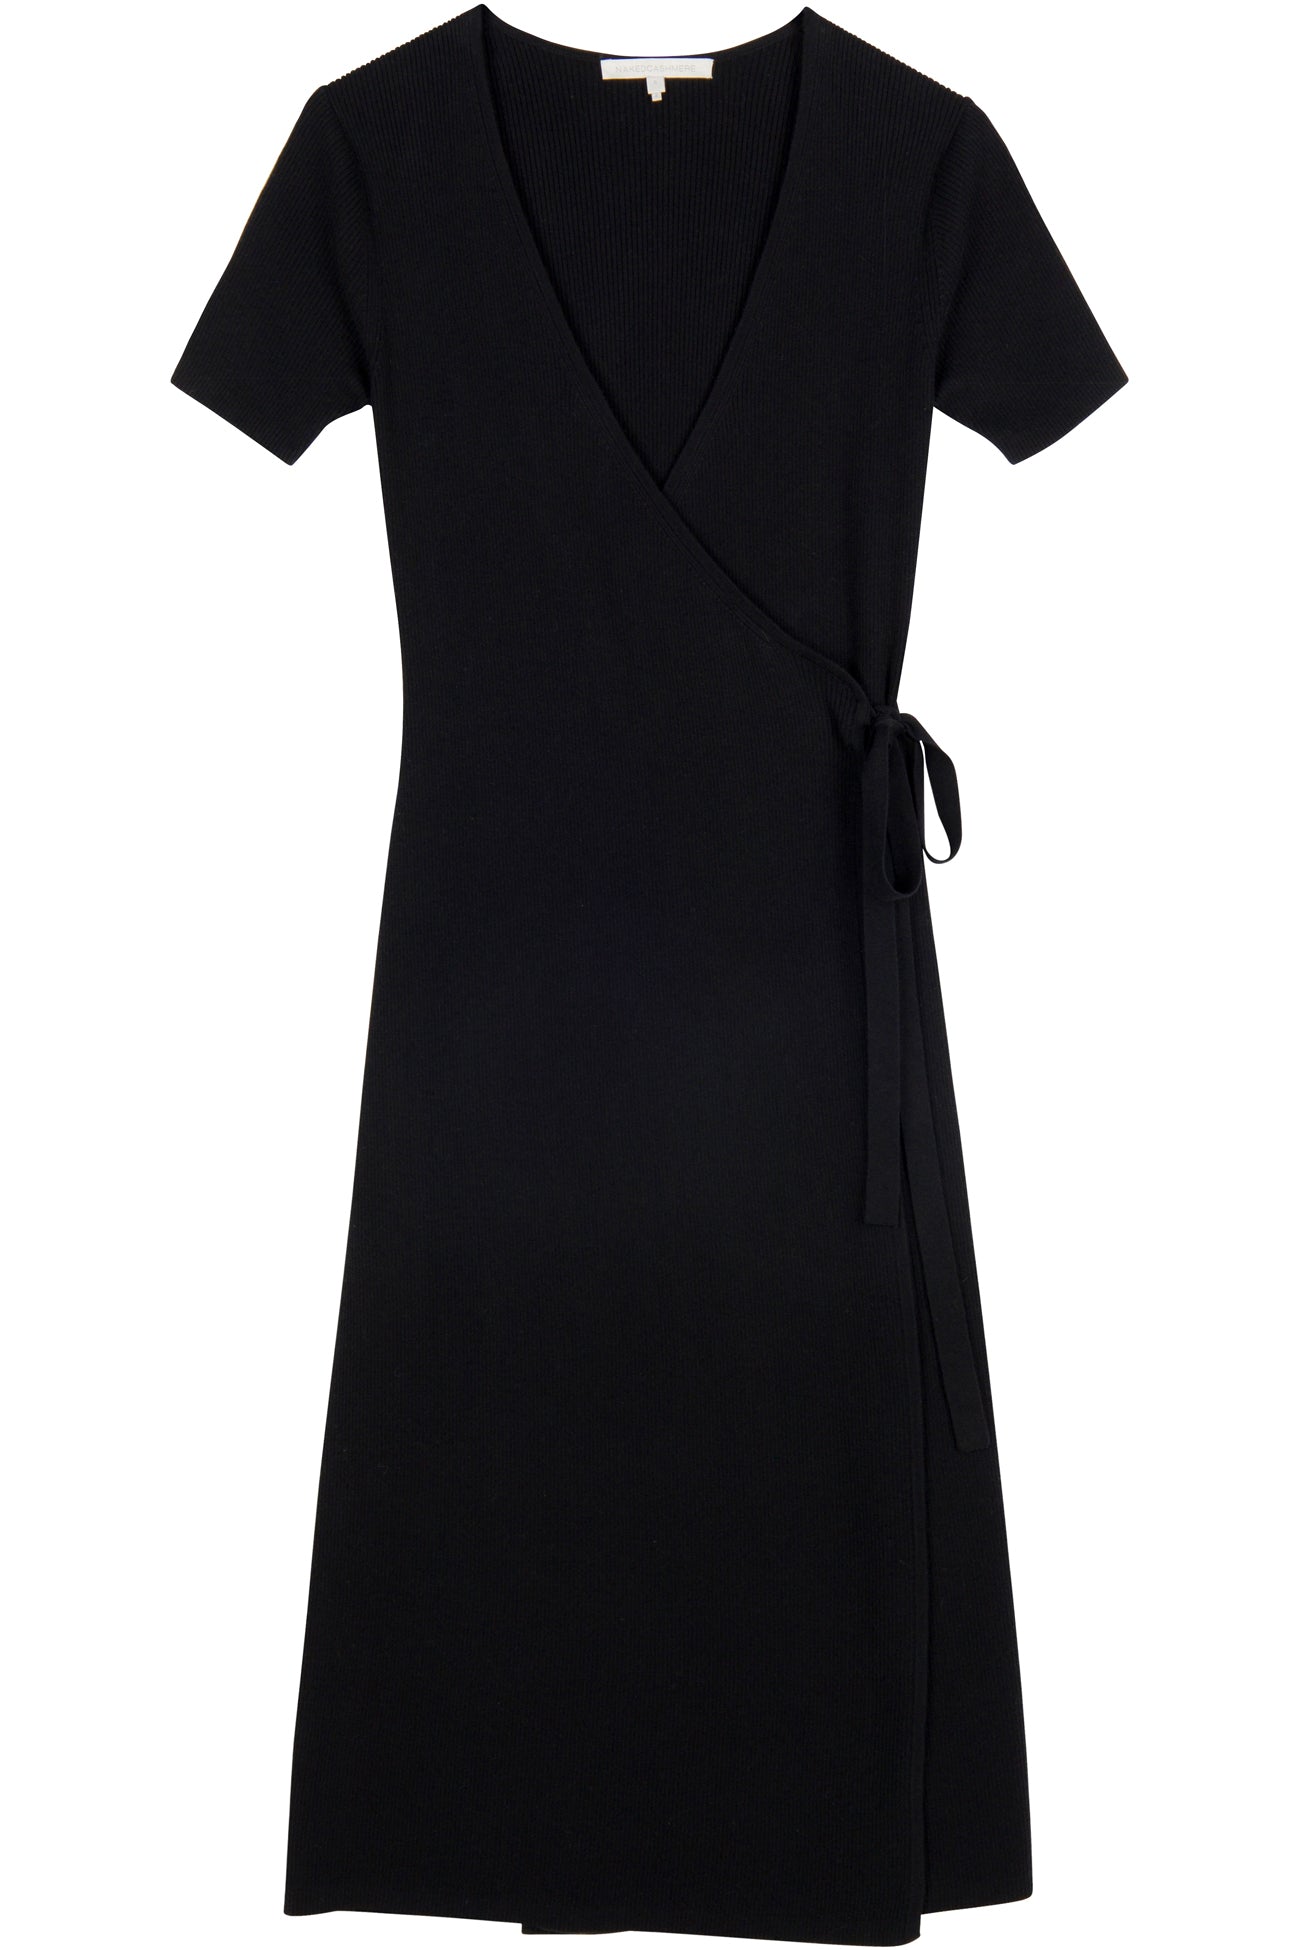 | Sleeve Dress Midi NakedCashmere Elsie Women\'s Short Wrap